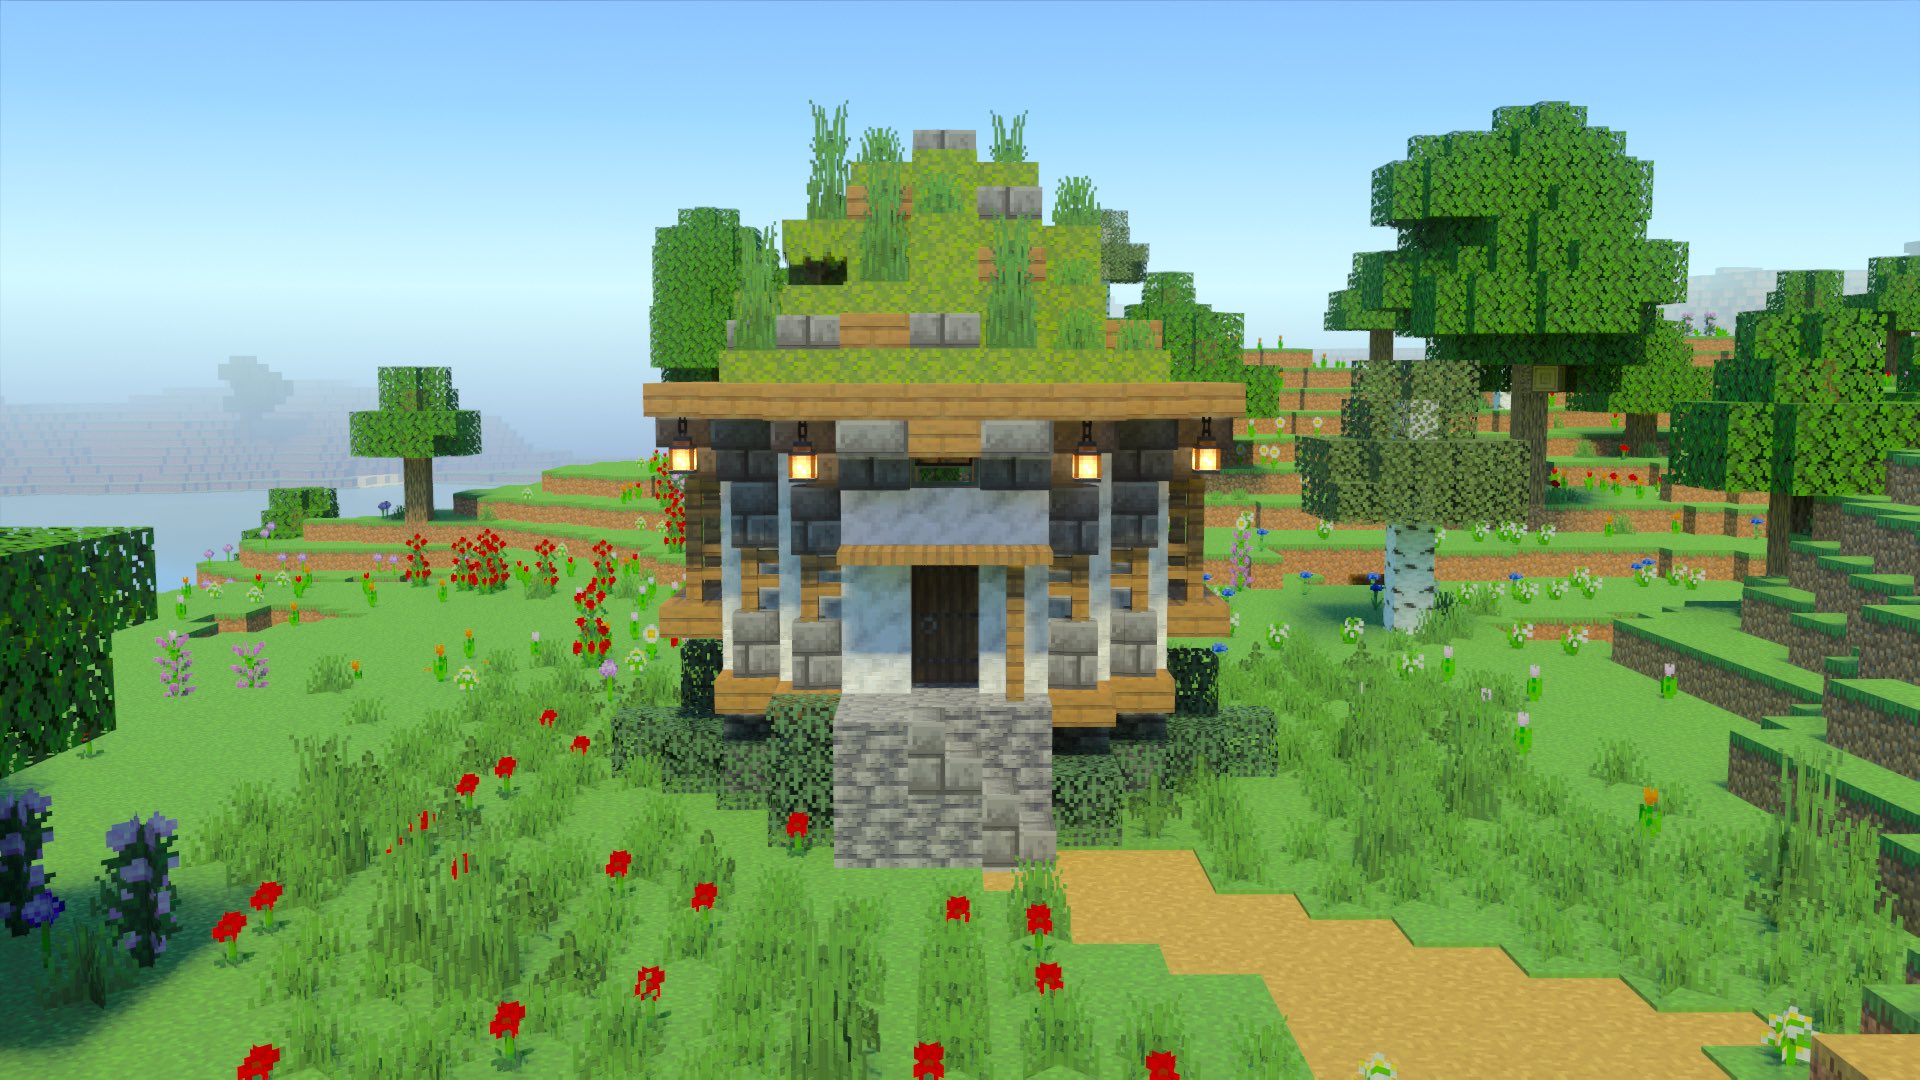 こぐまぷろ Kogumapro 小さい苔ブロックの屋根の家を作ってみました マイクラ Minecraft建築コミュ マインクラフト Minecraft バニラ建築学部 T Co Kjuoqz7iop Twitter